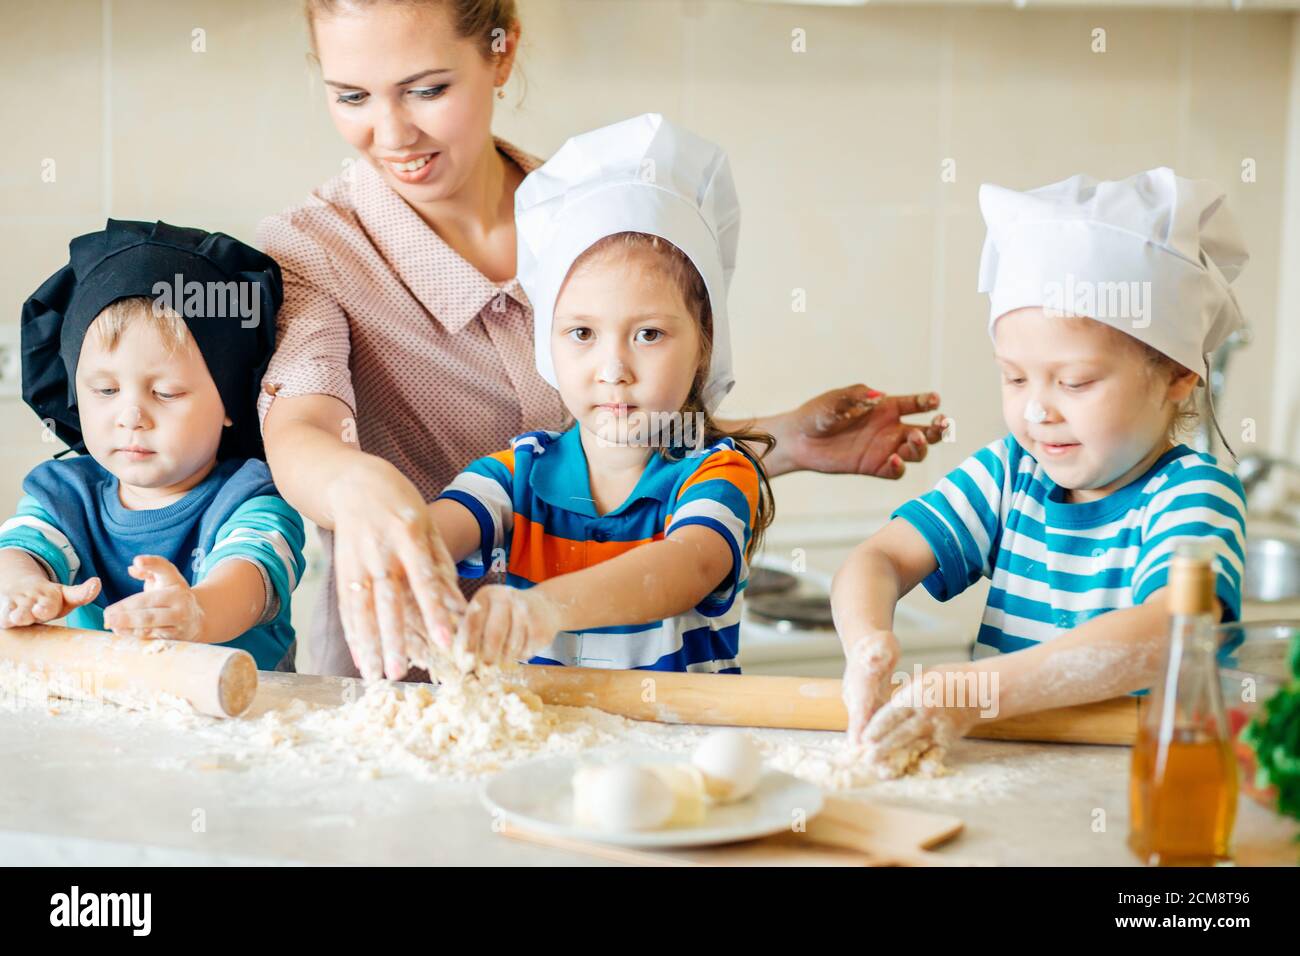 Gesunde Ernährung zu Hause. Glückliche Familie in der Küche. Mutter und Kind Tochter bereiten gebackende Kekse vor Stockfoto